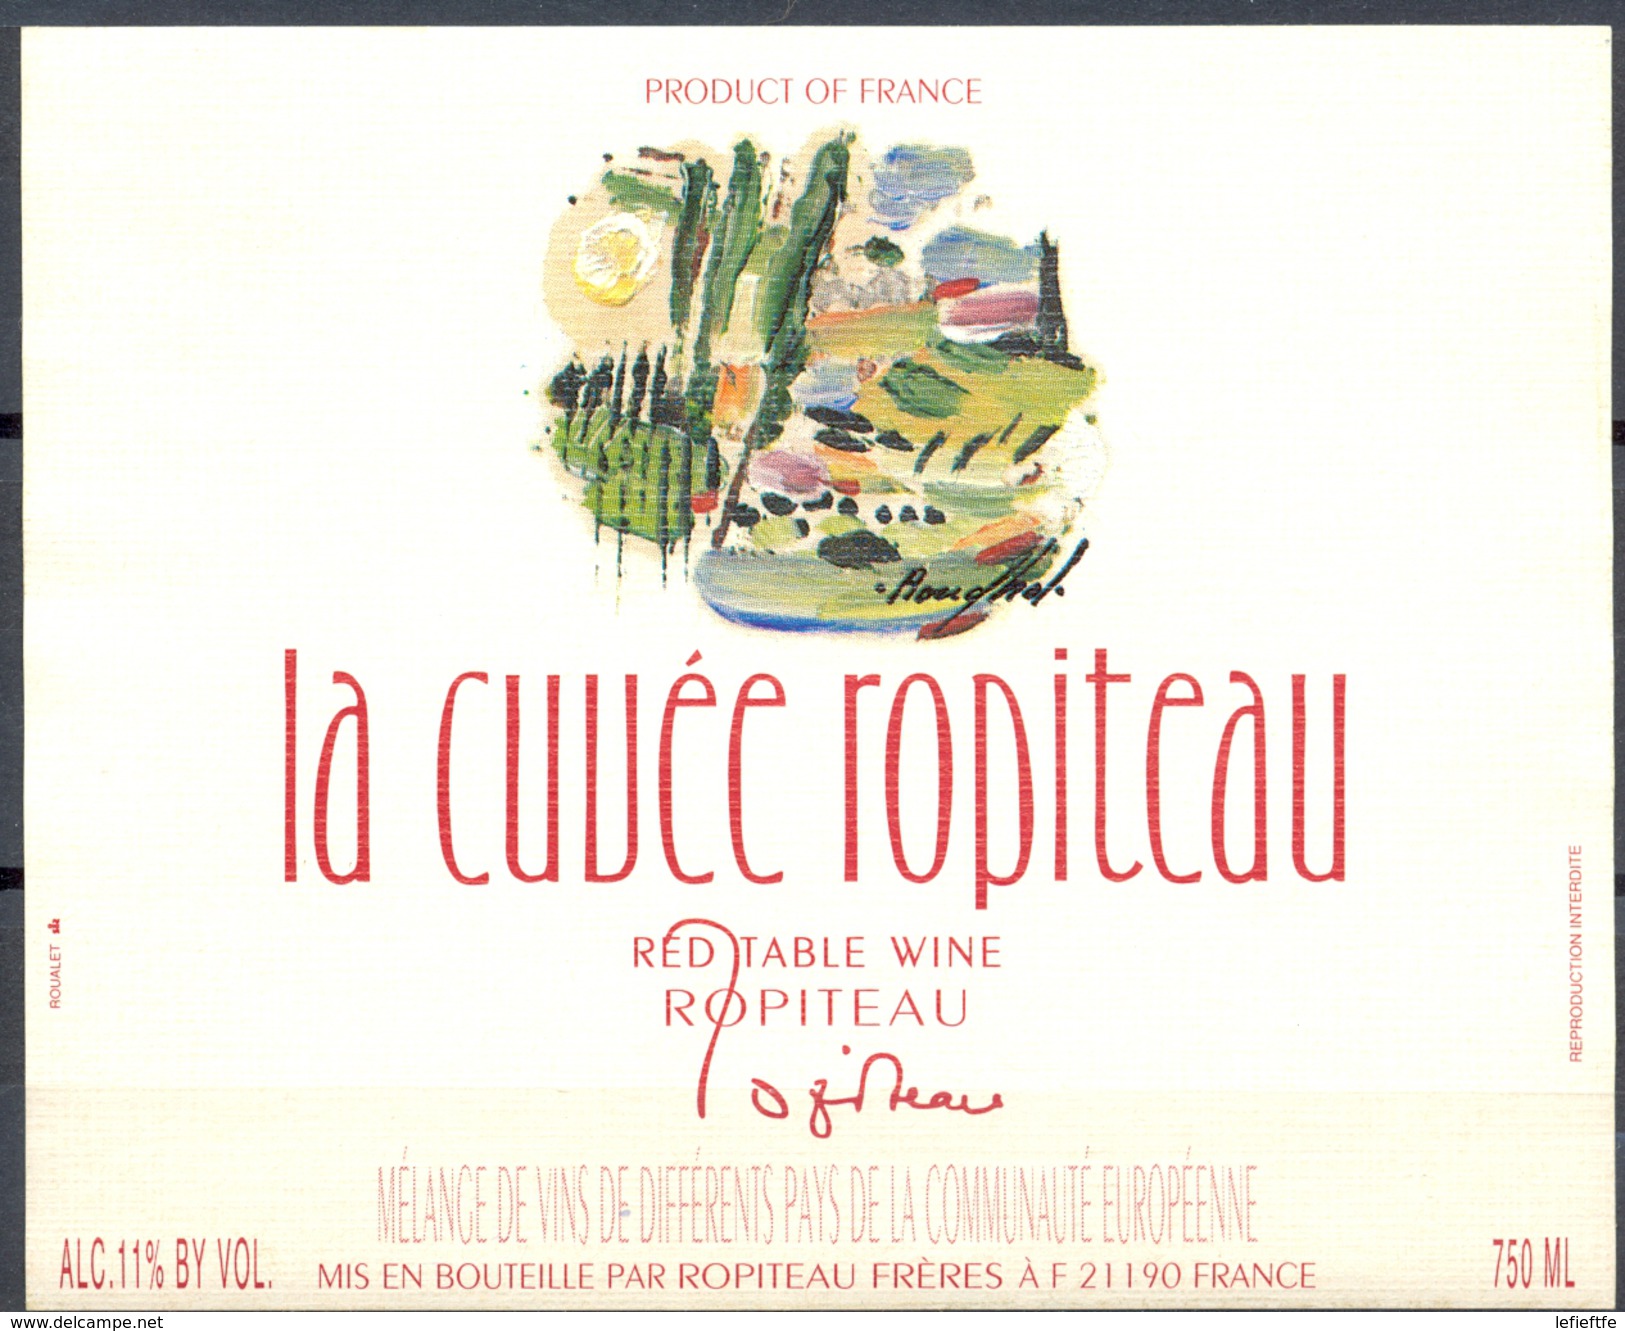 057 - La Cuvée Ropiteau  - Red Table Wine - Mélange De Différents Vins De La Communauté Europénne - Robiteau Frères - Rouges